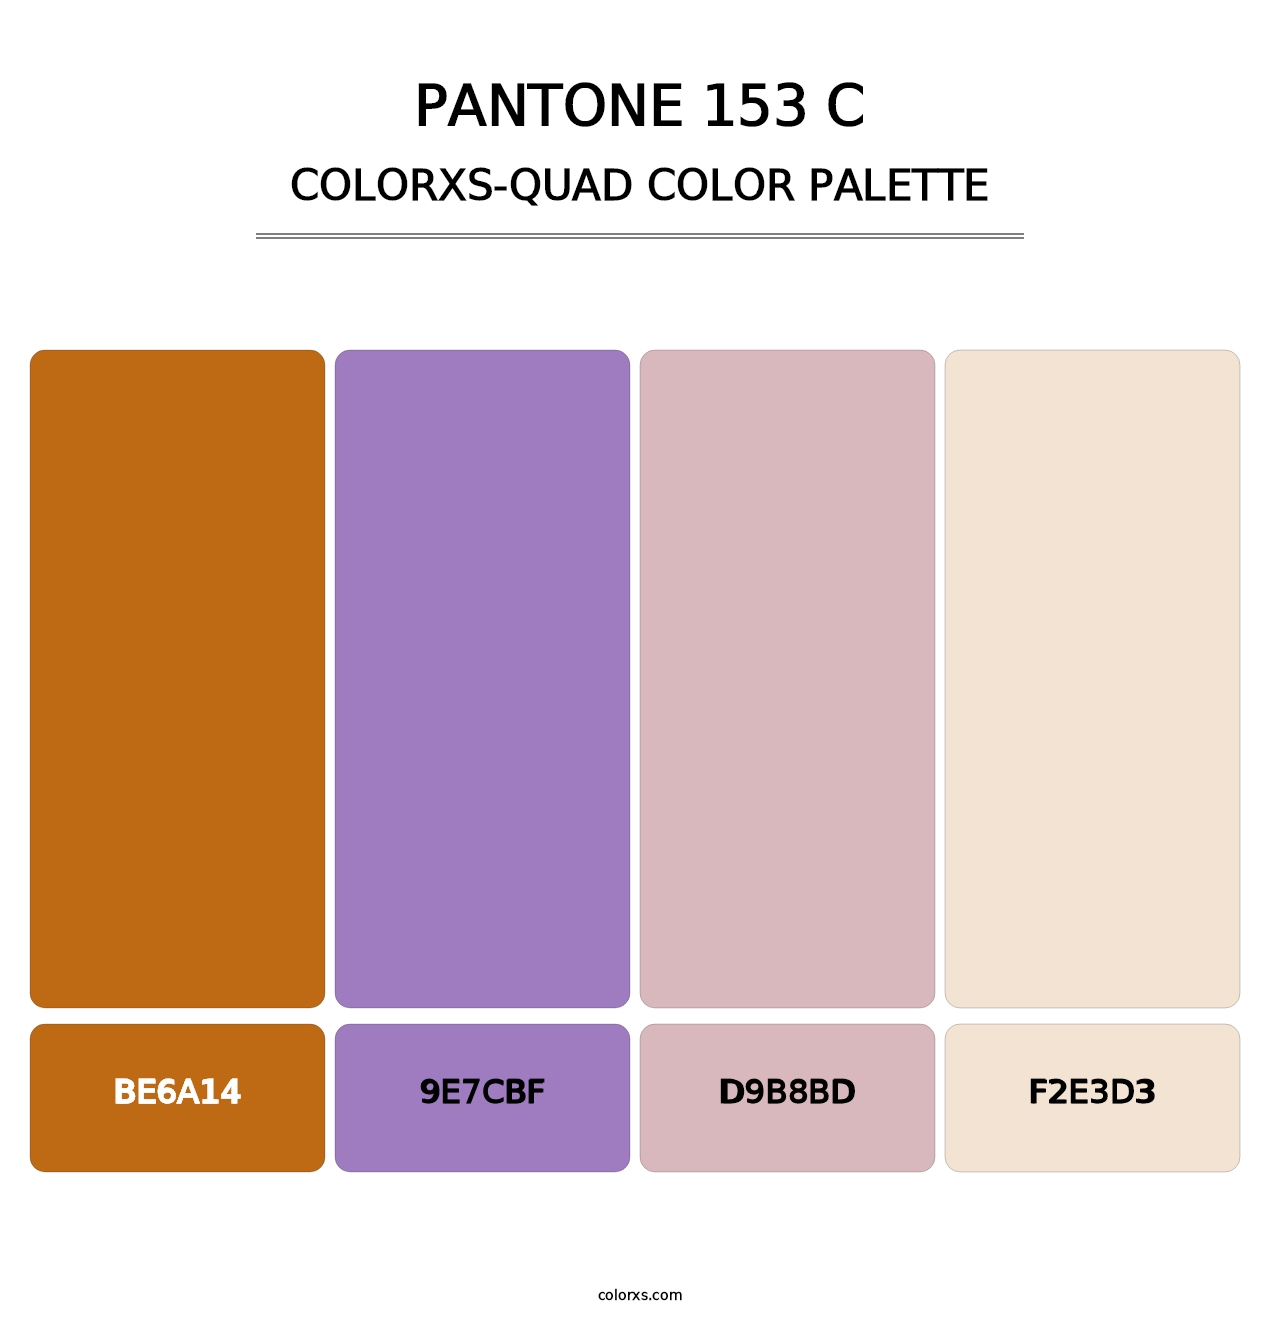 PANTONE 153 C - Colorxs Quad Palette